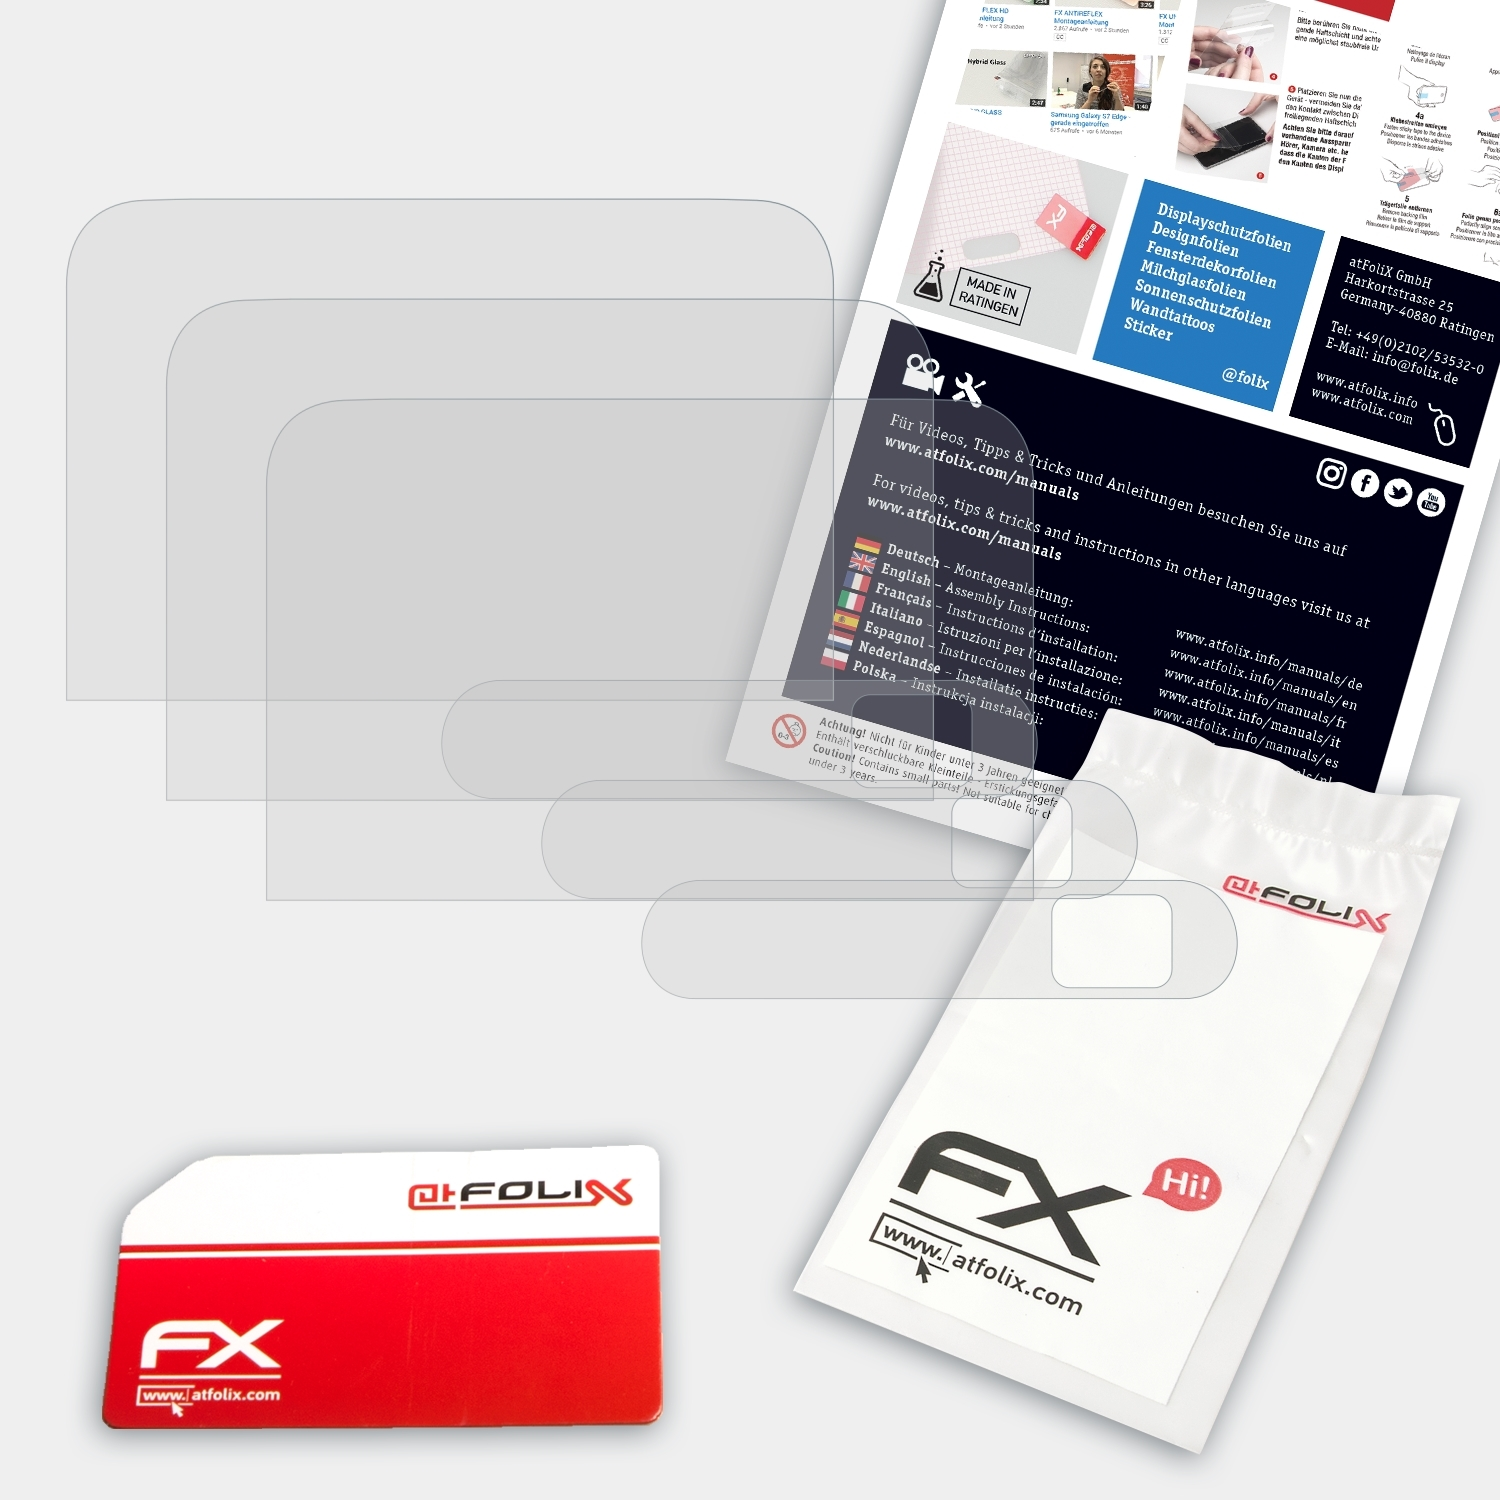 ATFOLIX FX-Antireflex 3x ZTE Displayschutz(für Spro 2)